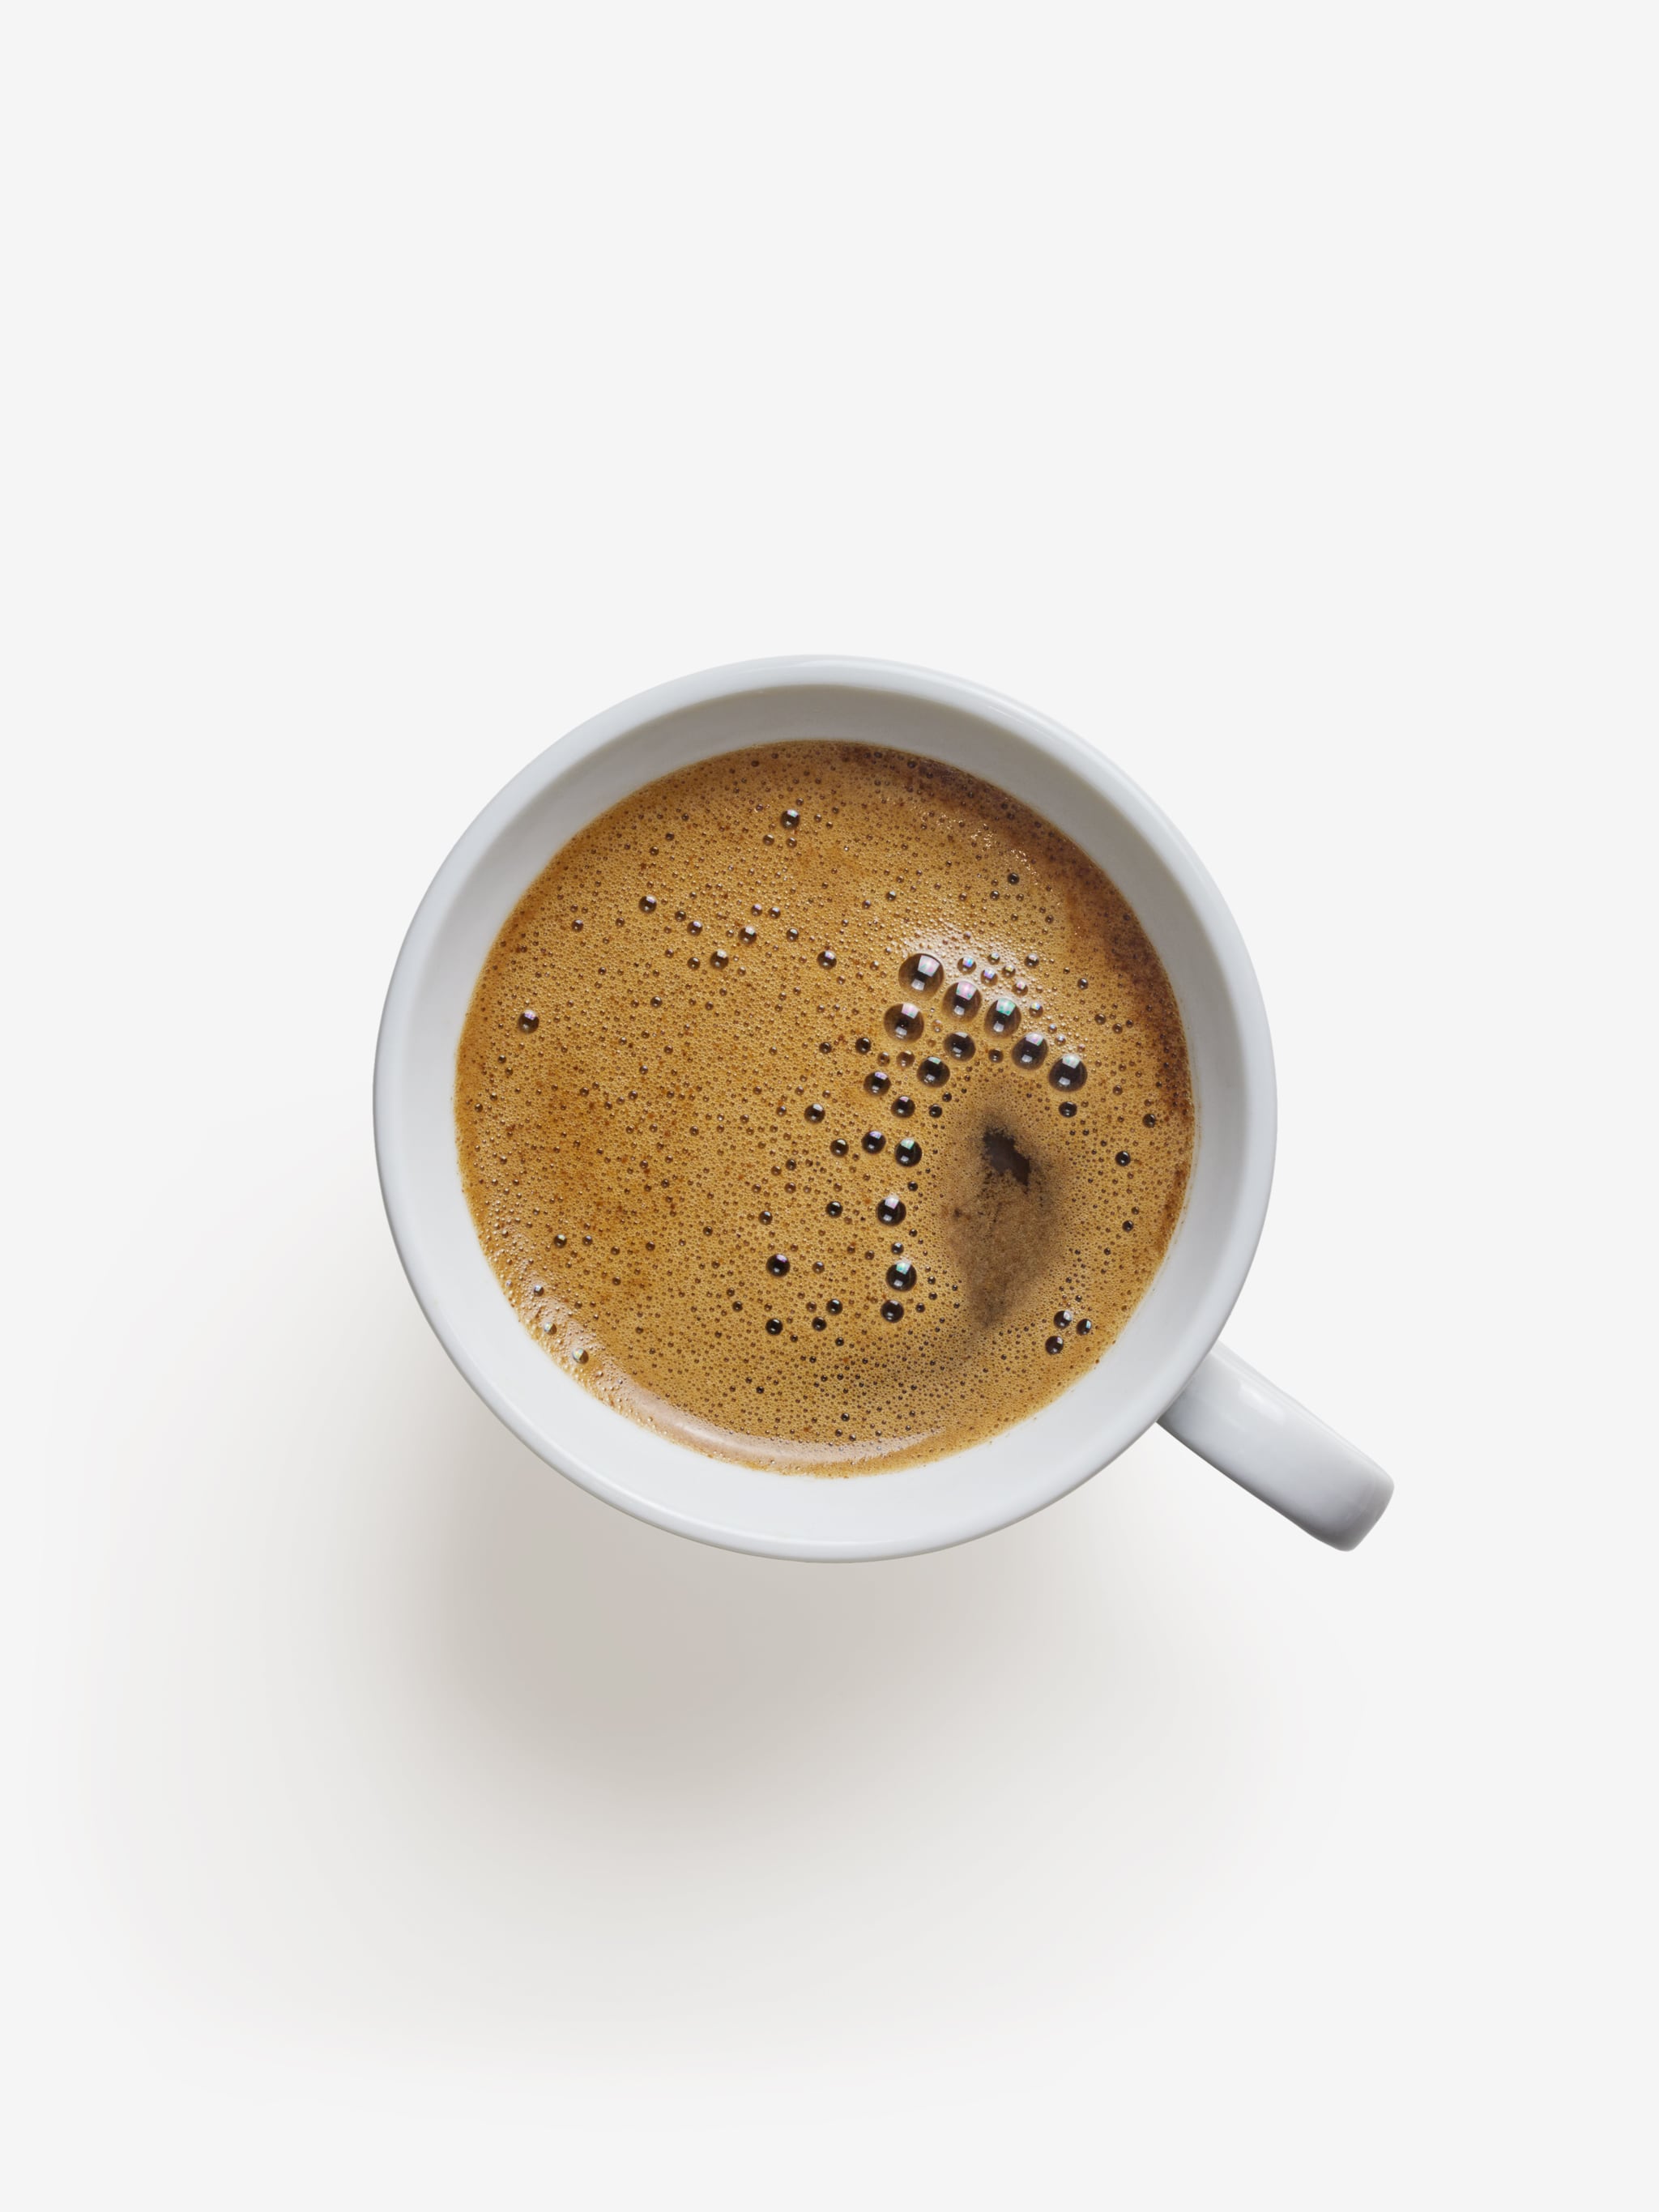 PSD Layered Coffee image